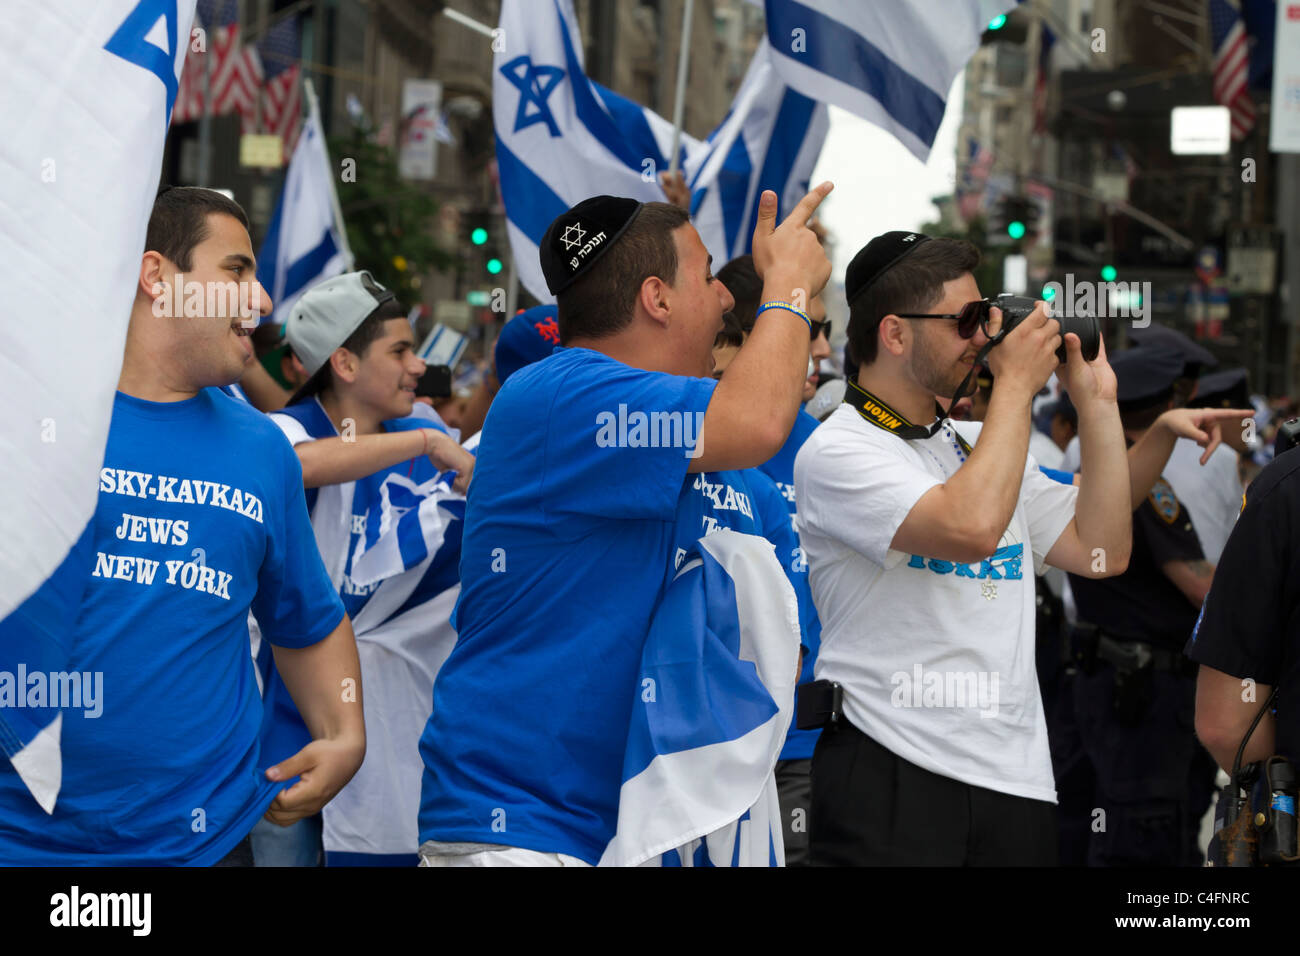 Pro-Israel-Demonstranten Zange anti-israelische Demonstranten bei der 2011 feiern Israel Parade auf der Fifth Avenue in New York City Stockfoto